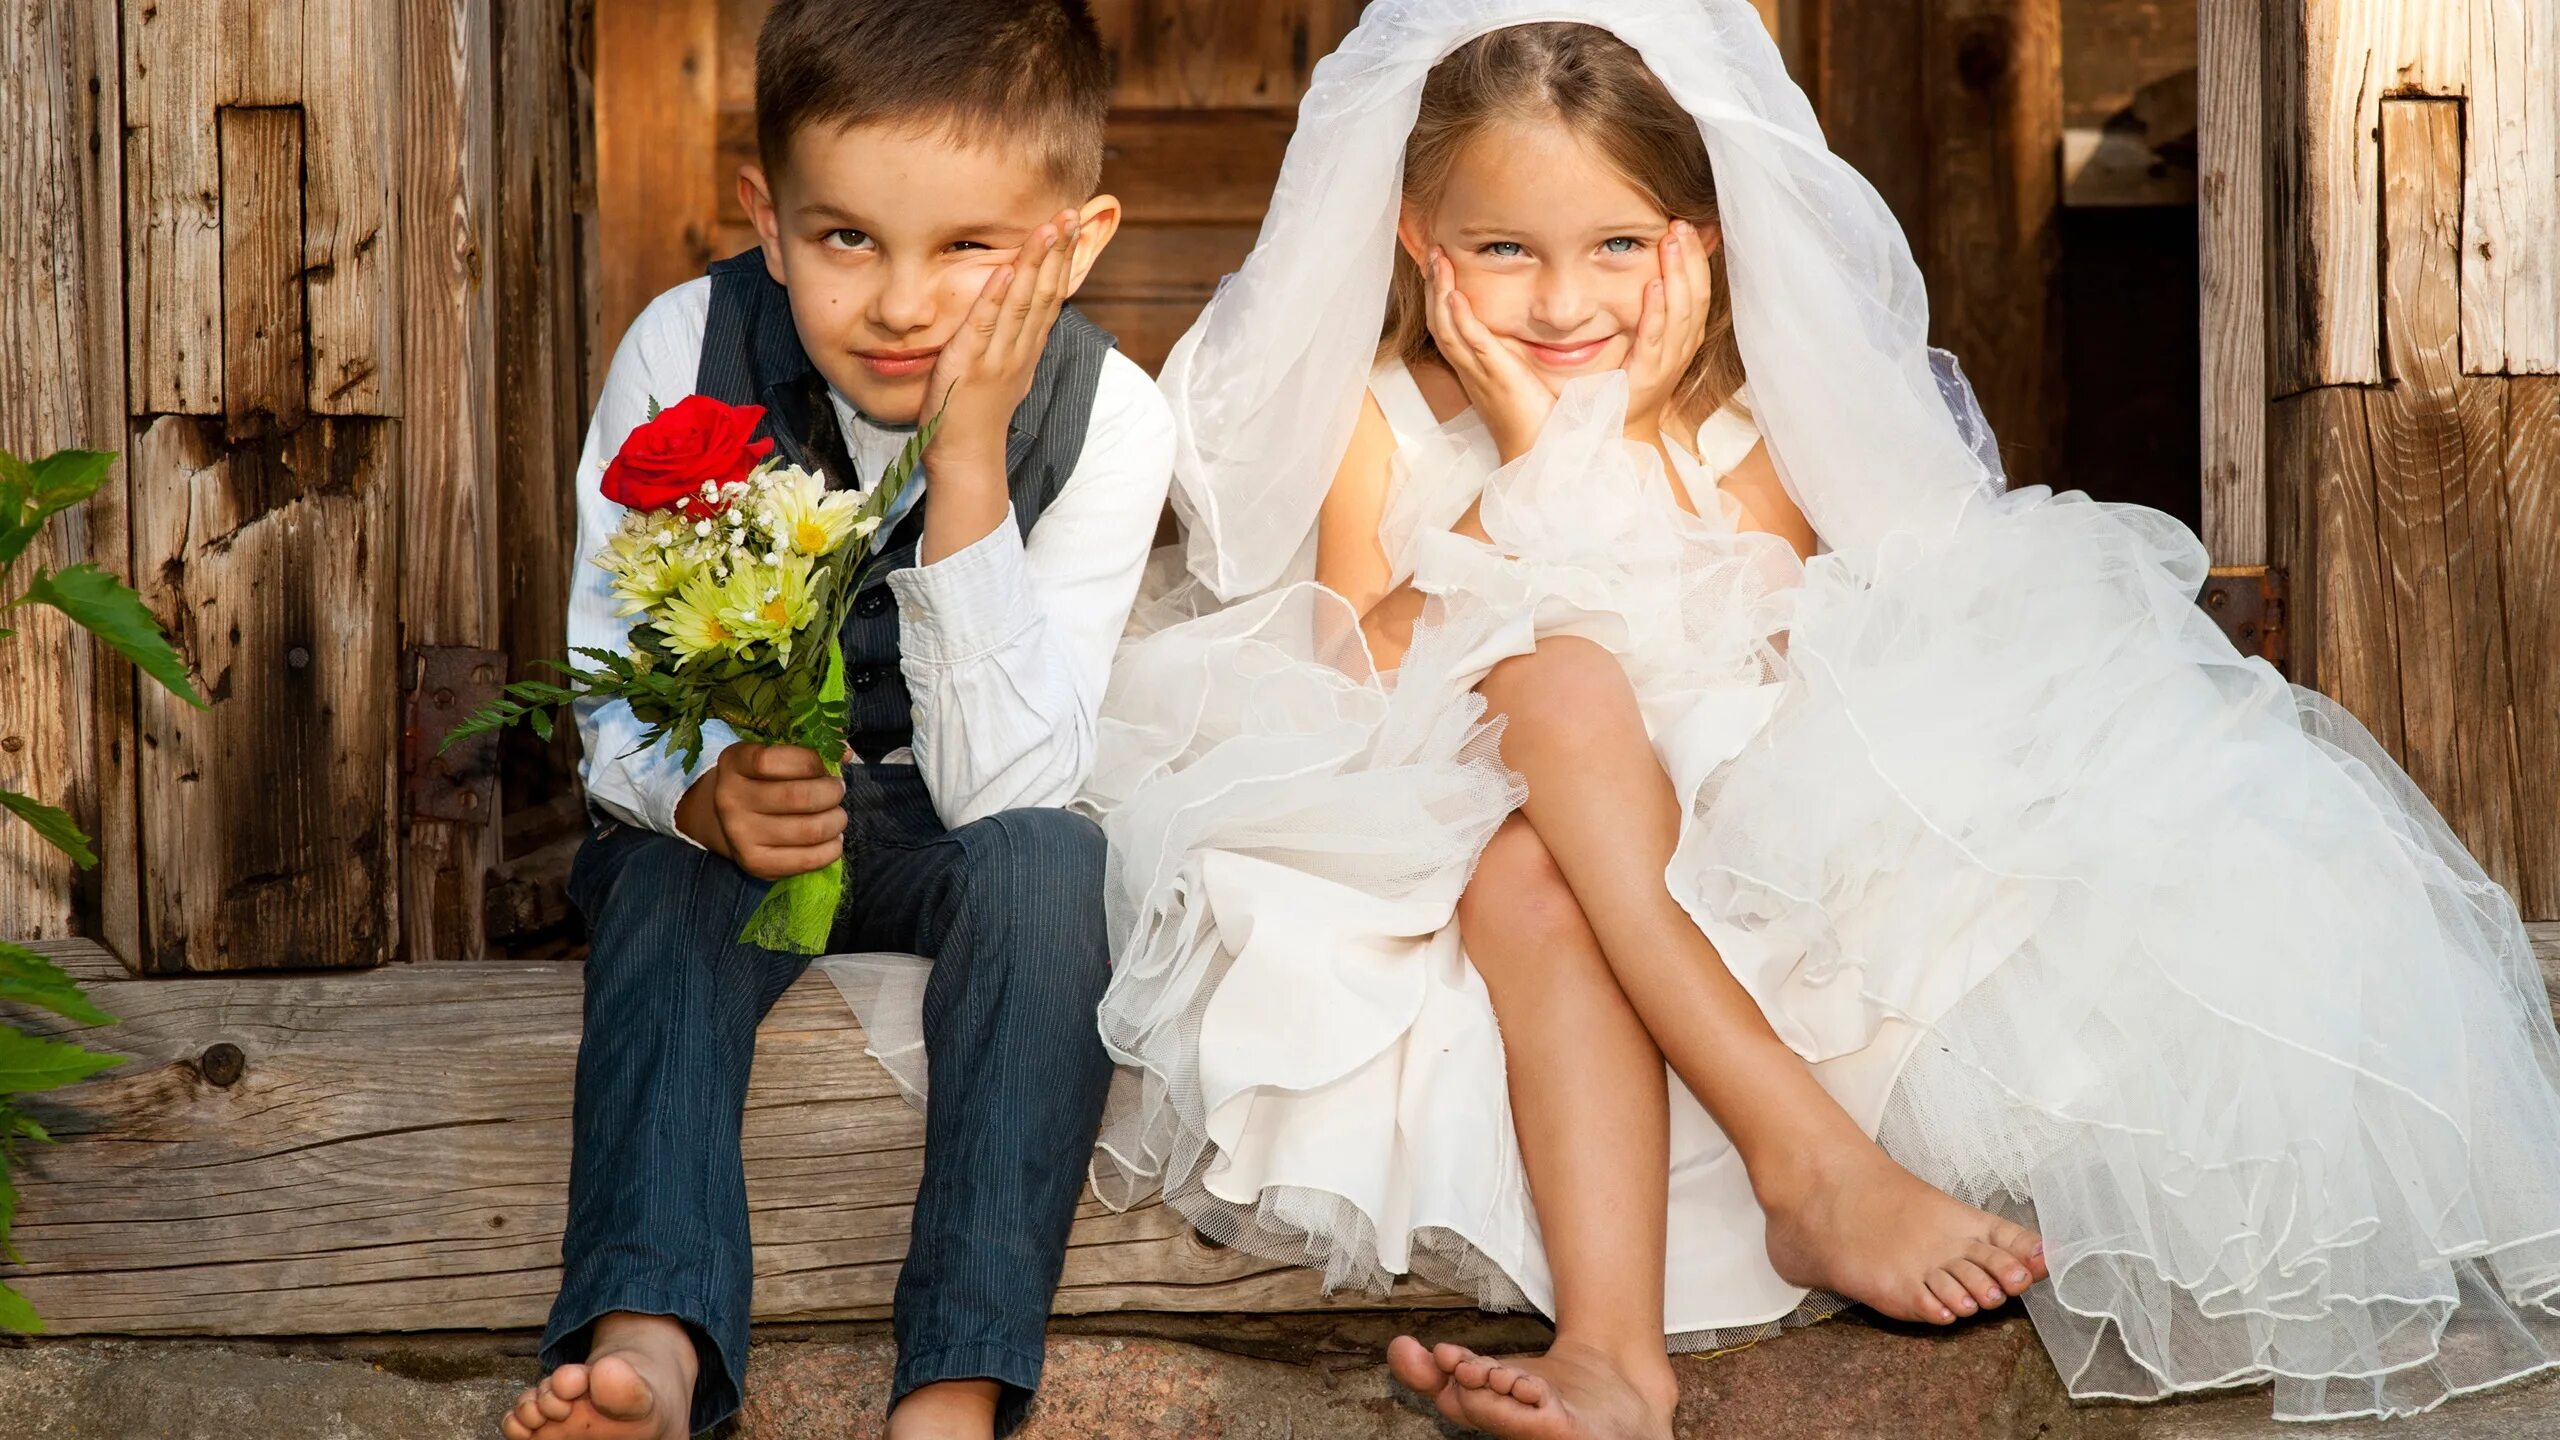 Ранние браки. Дети в свадебных нарядах. Дети жених и невеста. Свадьба подростков.